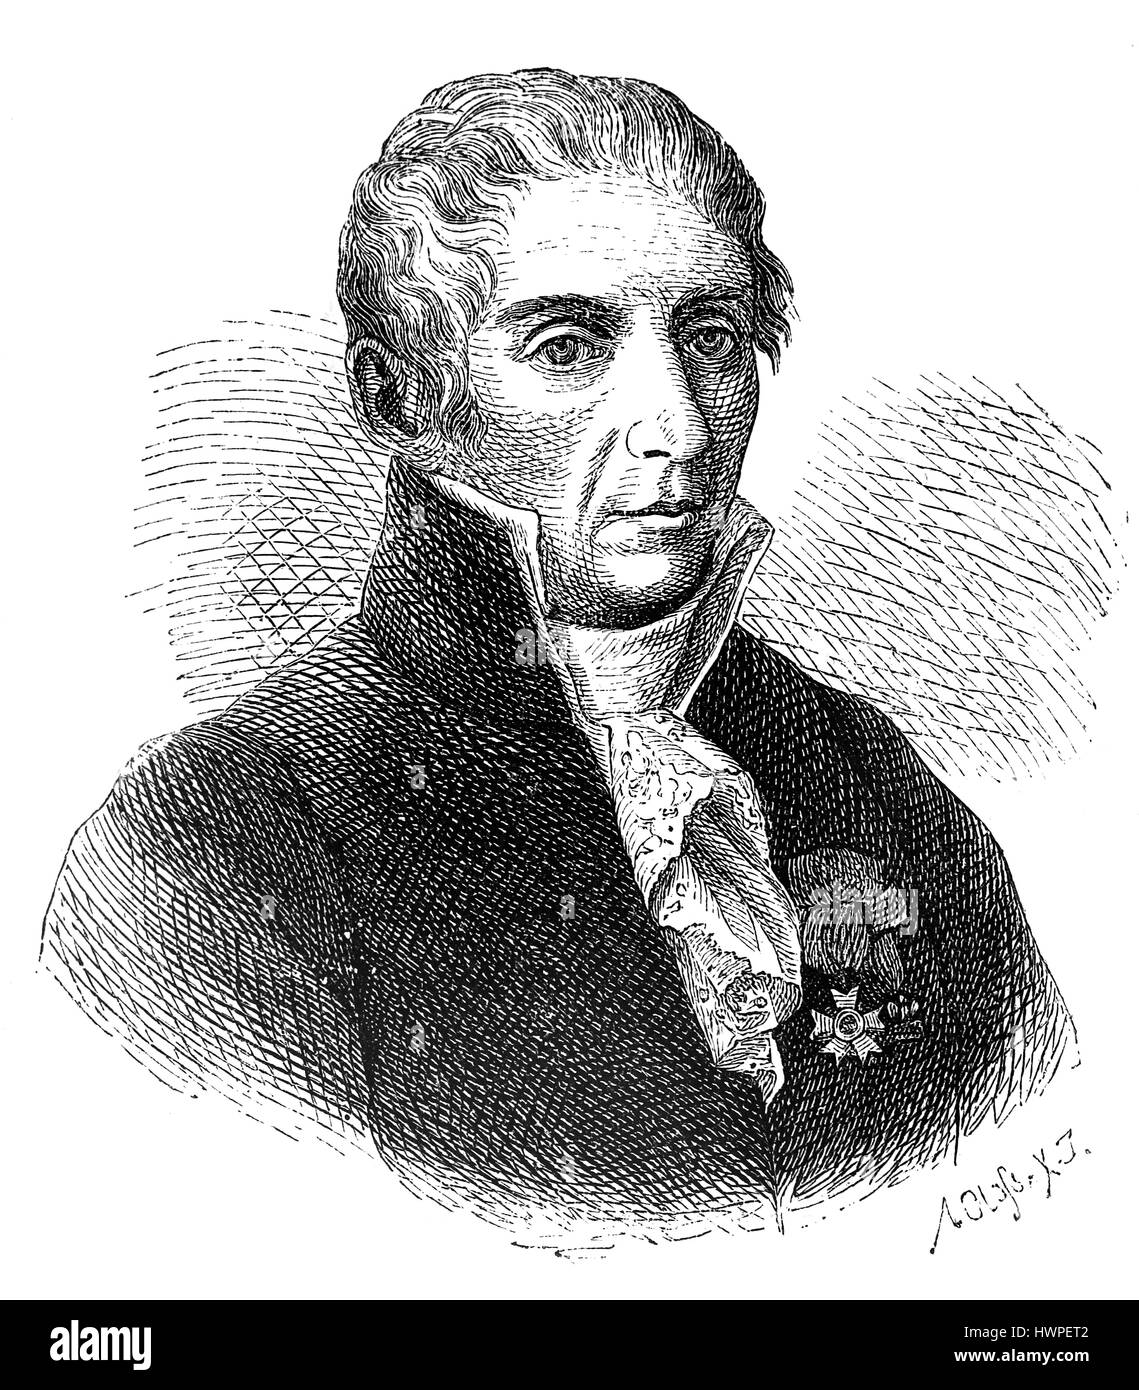 Alessandro Volta (1745-1827). Physicien, chimiste italien et pionner de l'électricité. Gravure, 1883. Banque D'Images